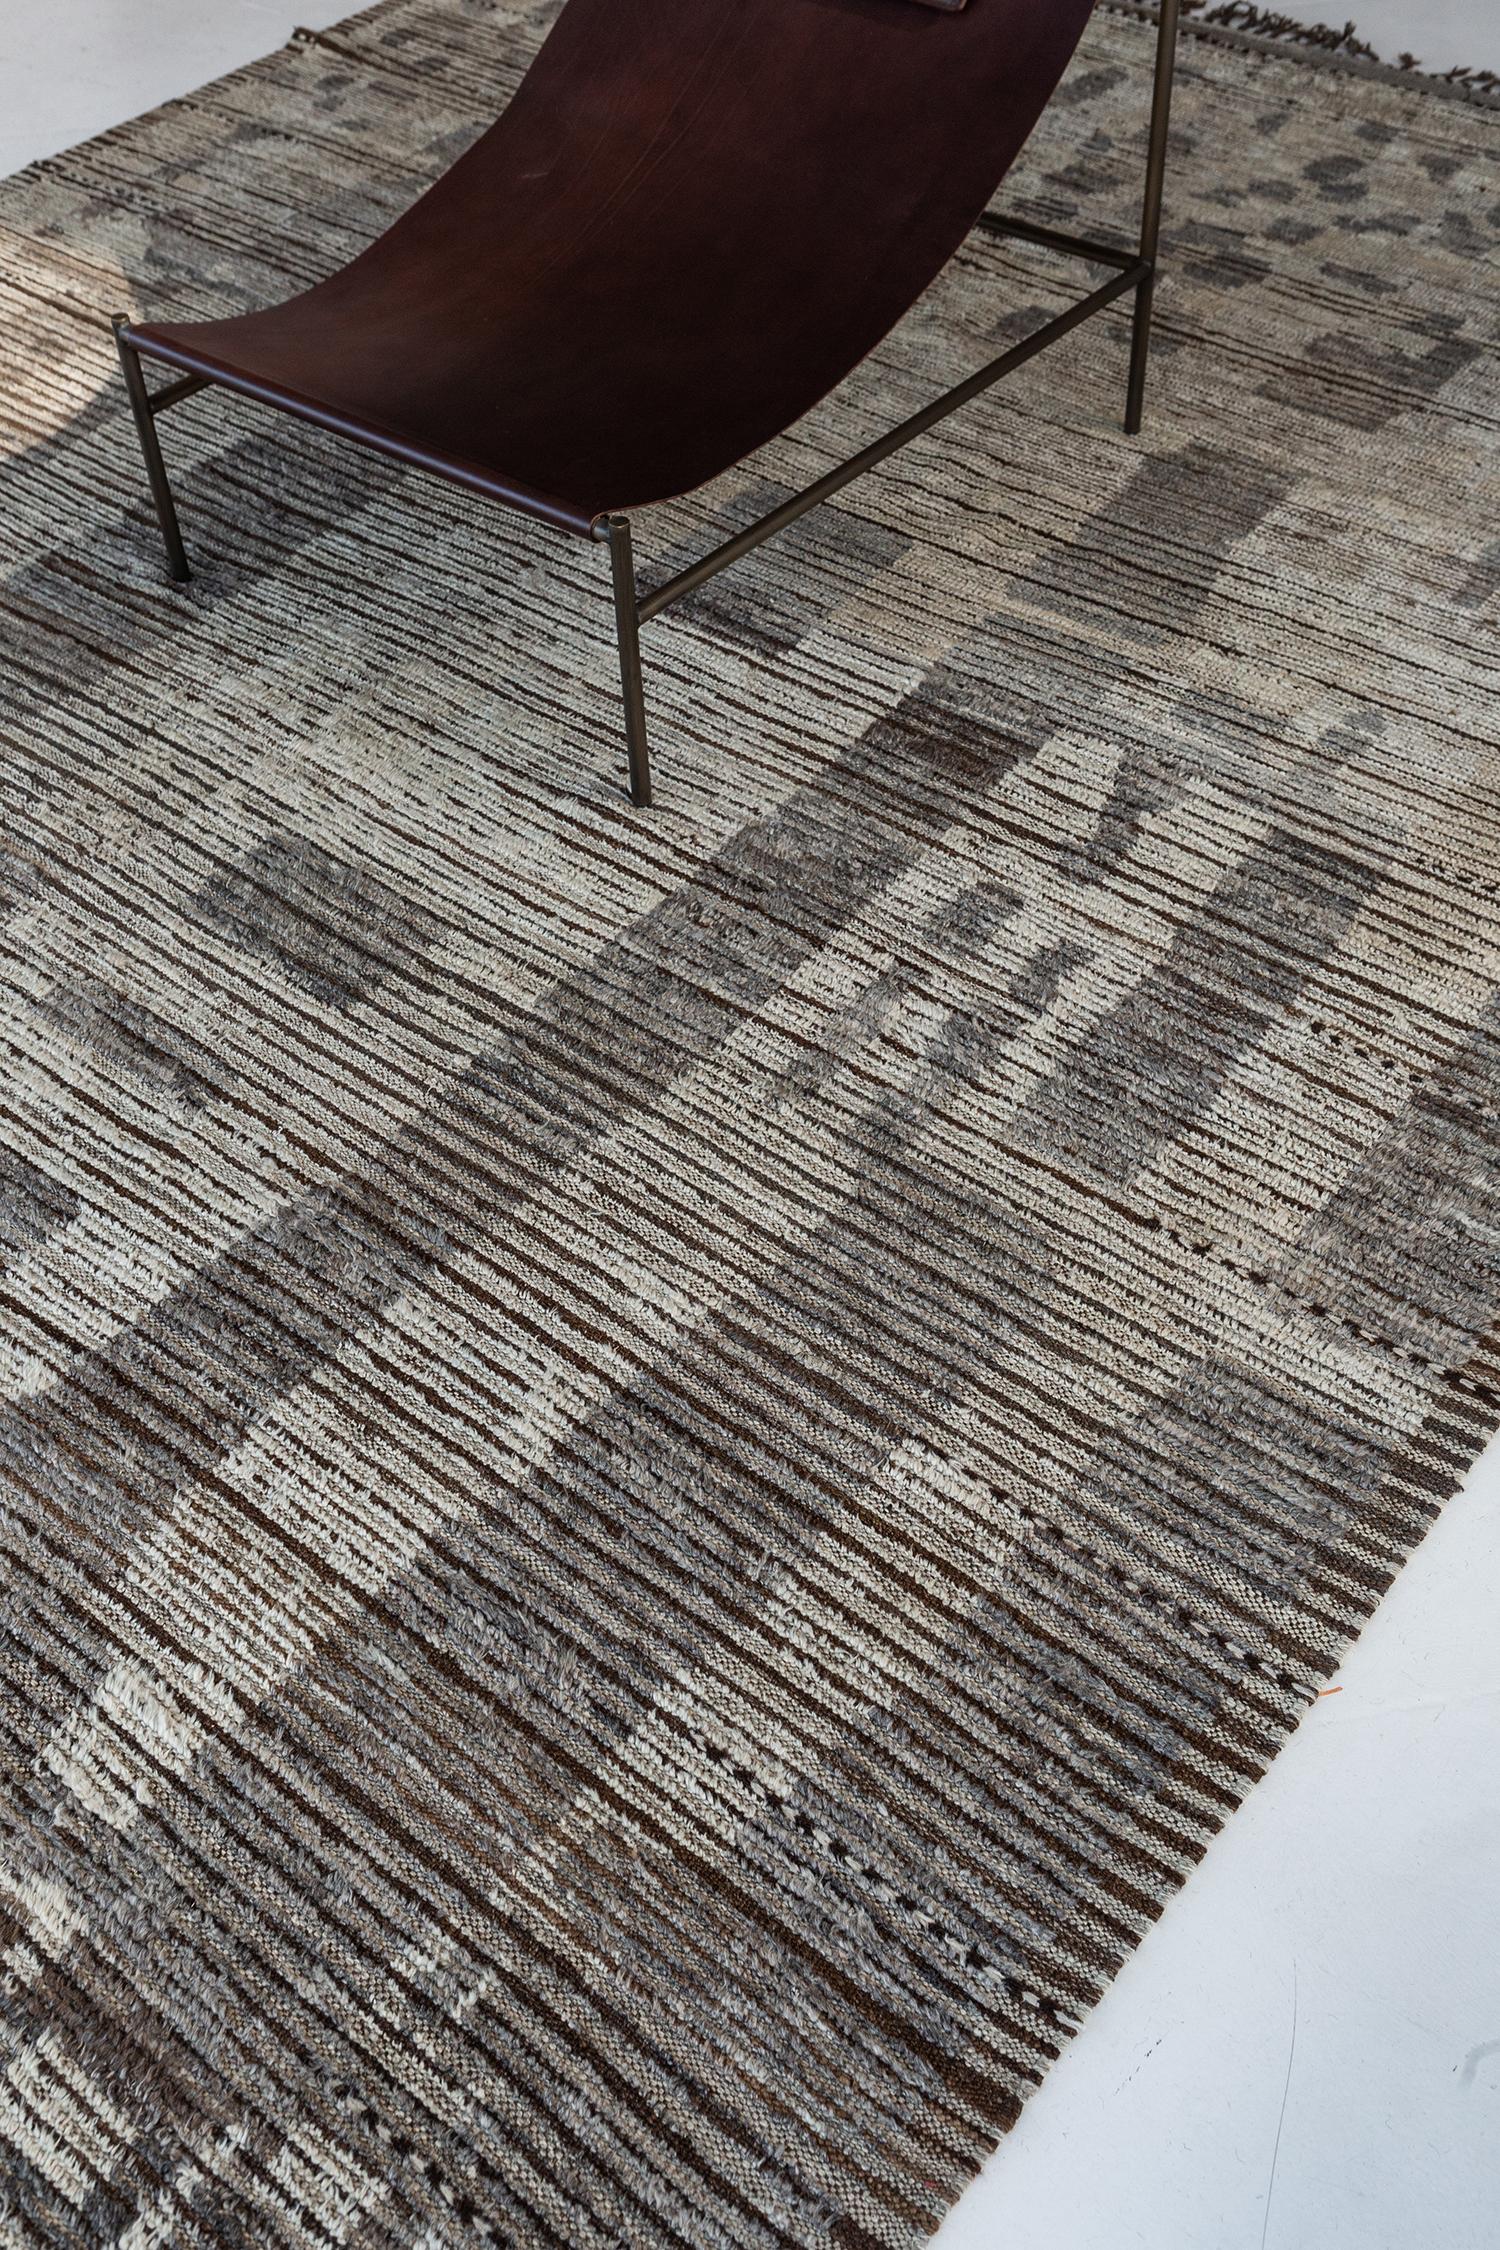 Dieser natürliche, erdfarbene Teppich ist eine moderne Interpretation eines marokkanischen Azilal. Handgewebte Wolle in Elfenbein- und Zedernbraun-Tönen lässt sich leicht mit unregelmäßigen Mustern kombinieren. Mit seiner natürlichen Wärme und der